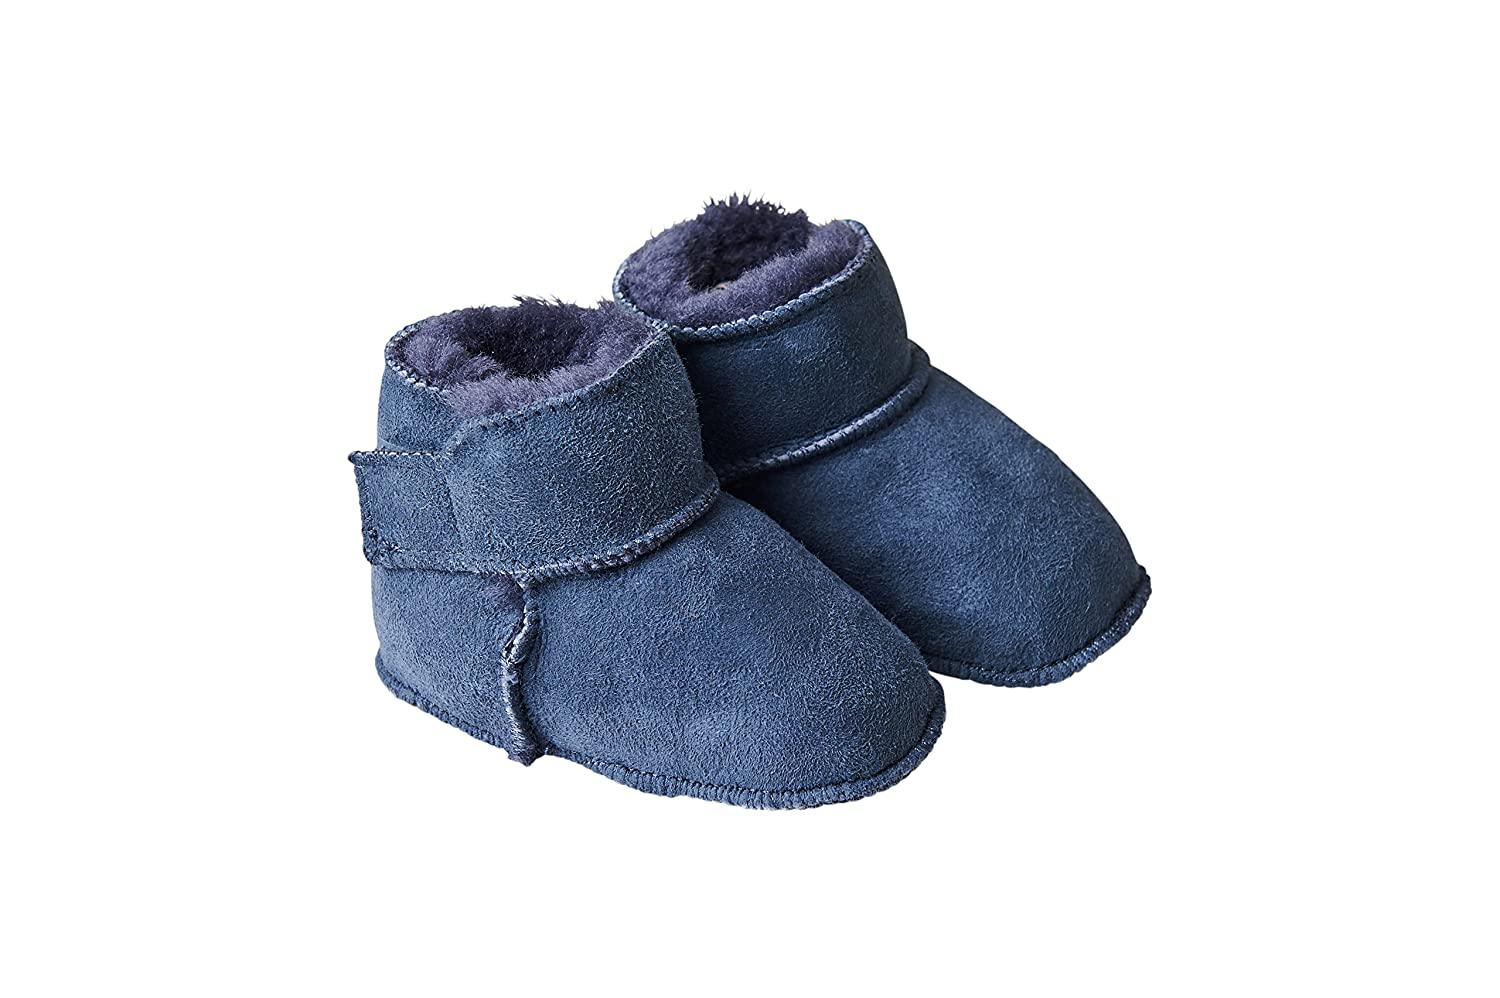 Fellhof 5101 Cuddly Baby Boots, Size 1 (16/17) 20/21